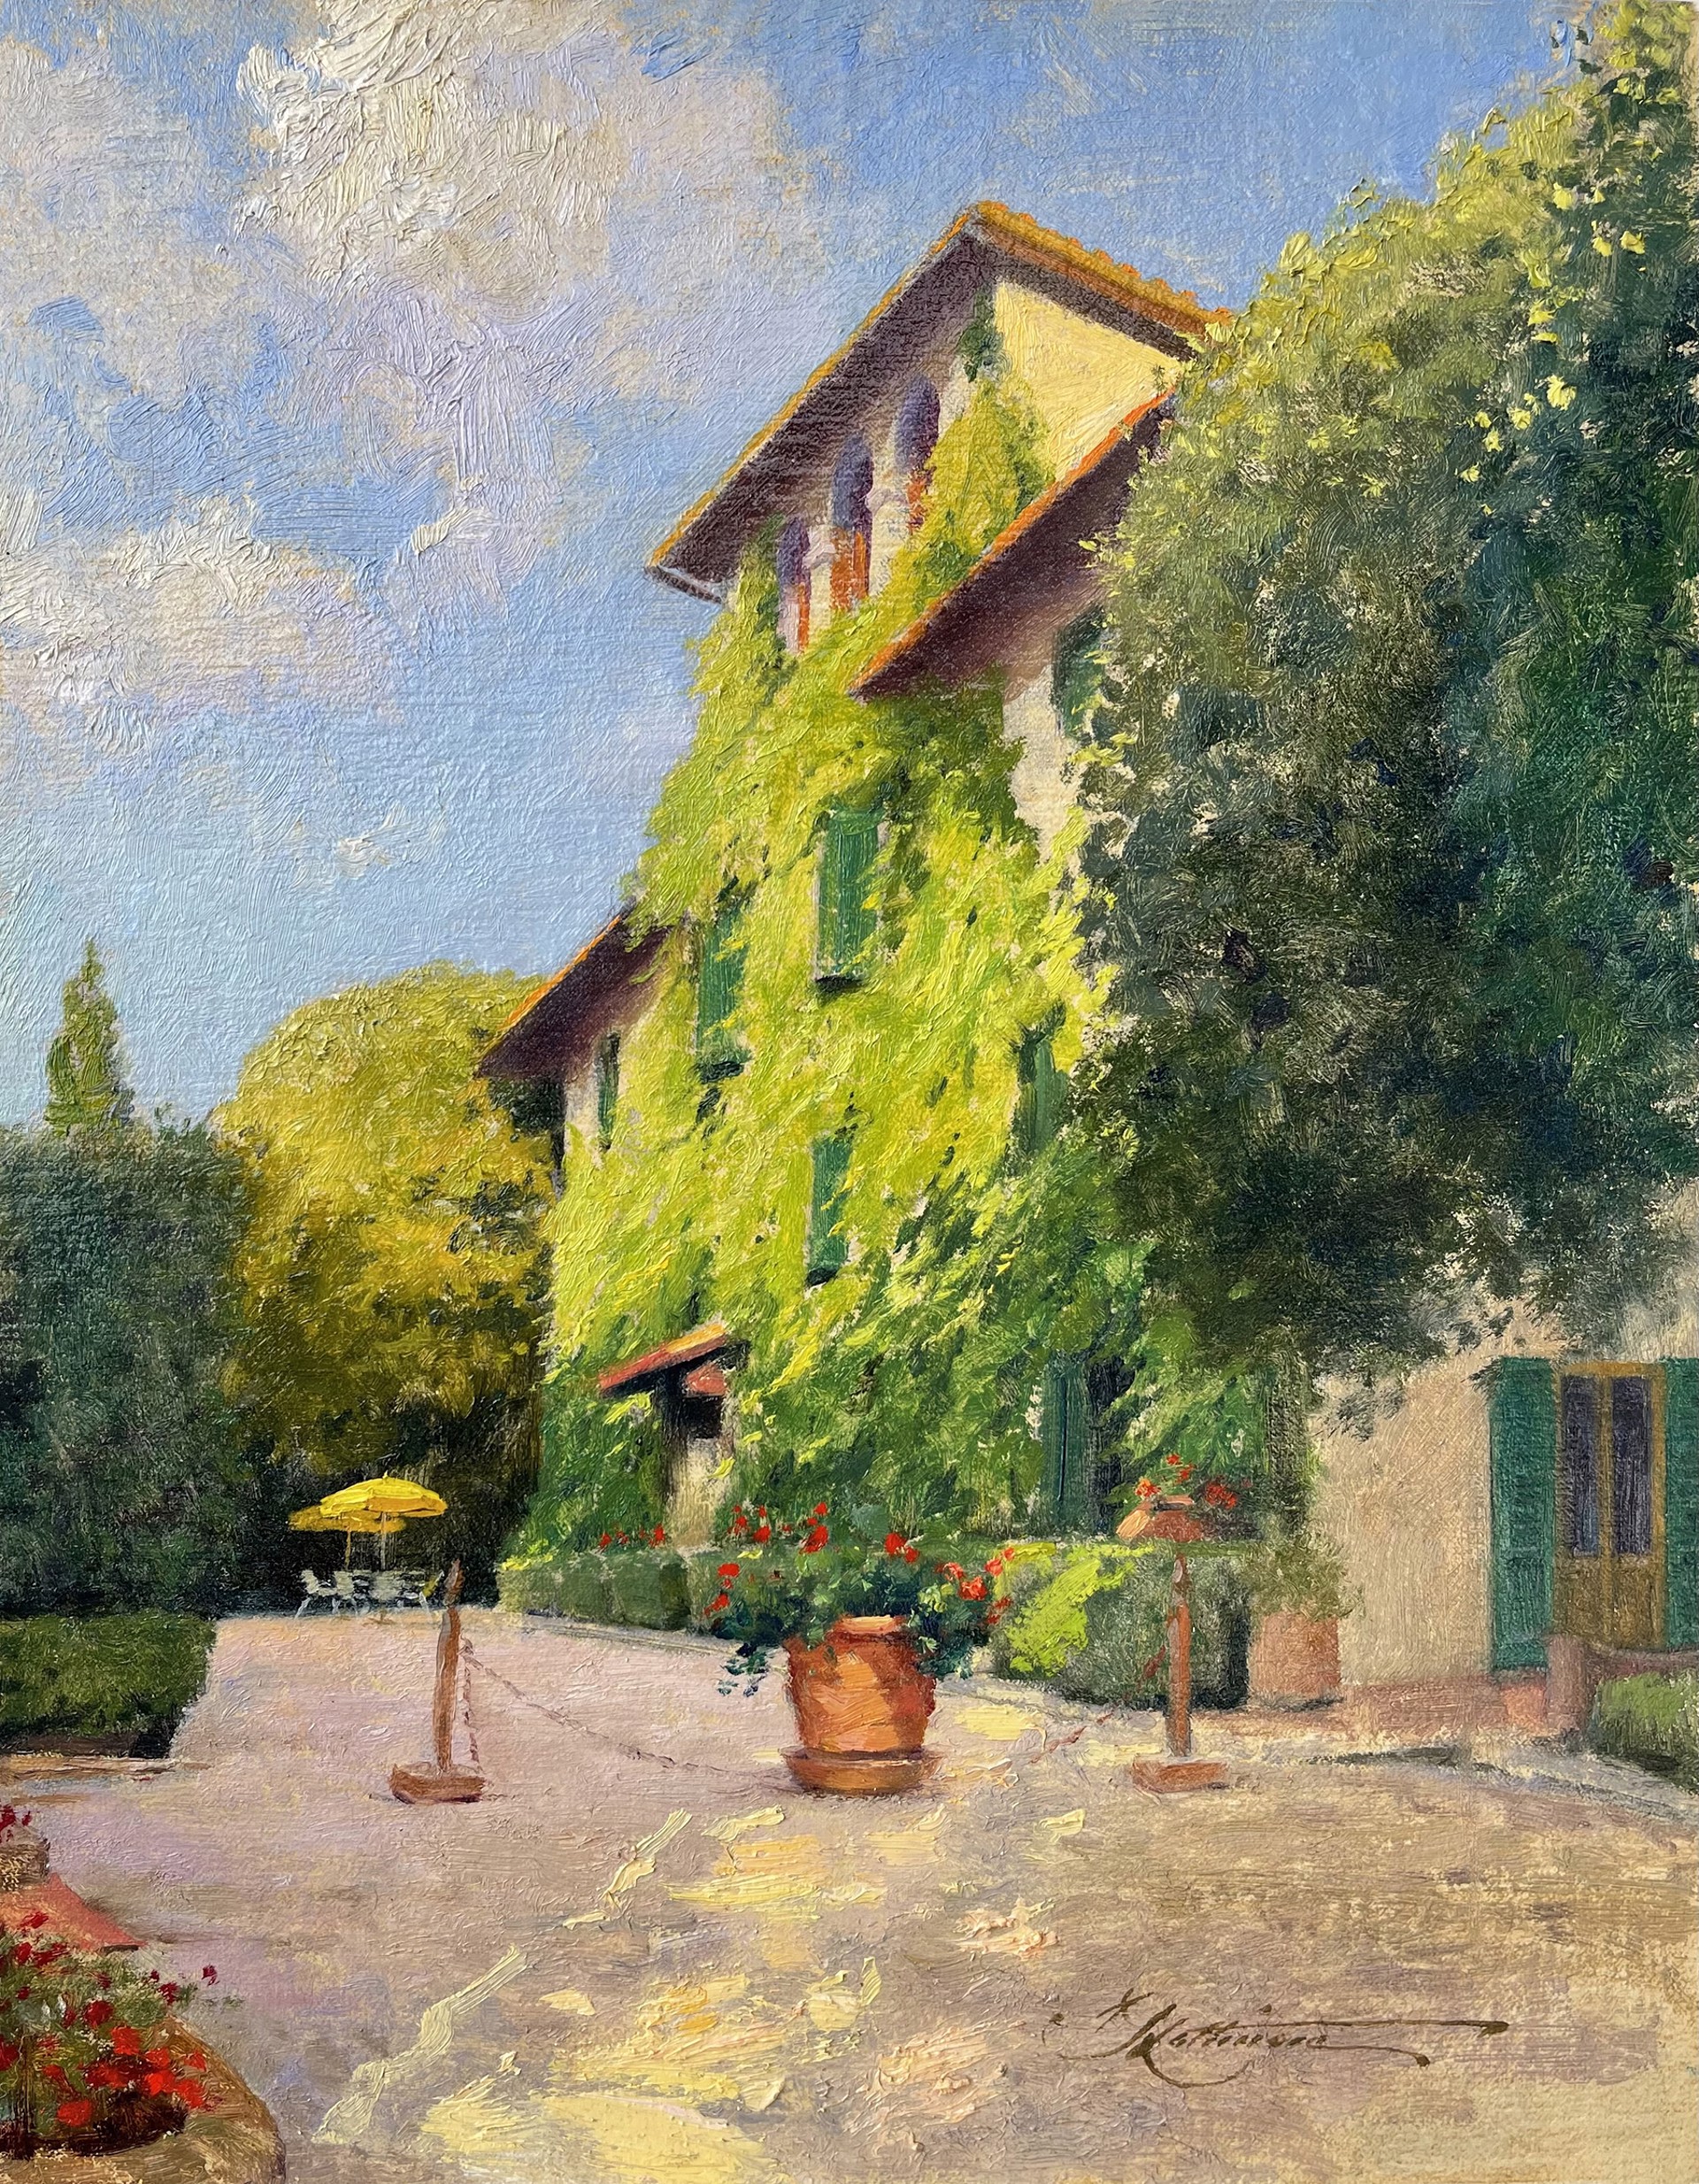 Villa in Chianti by Andrew Lattimore